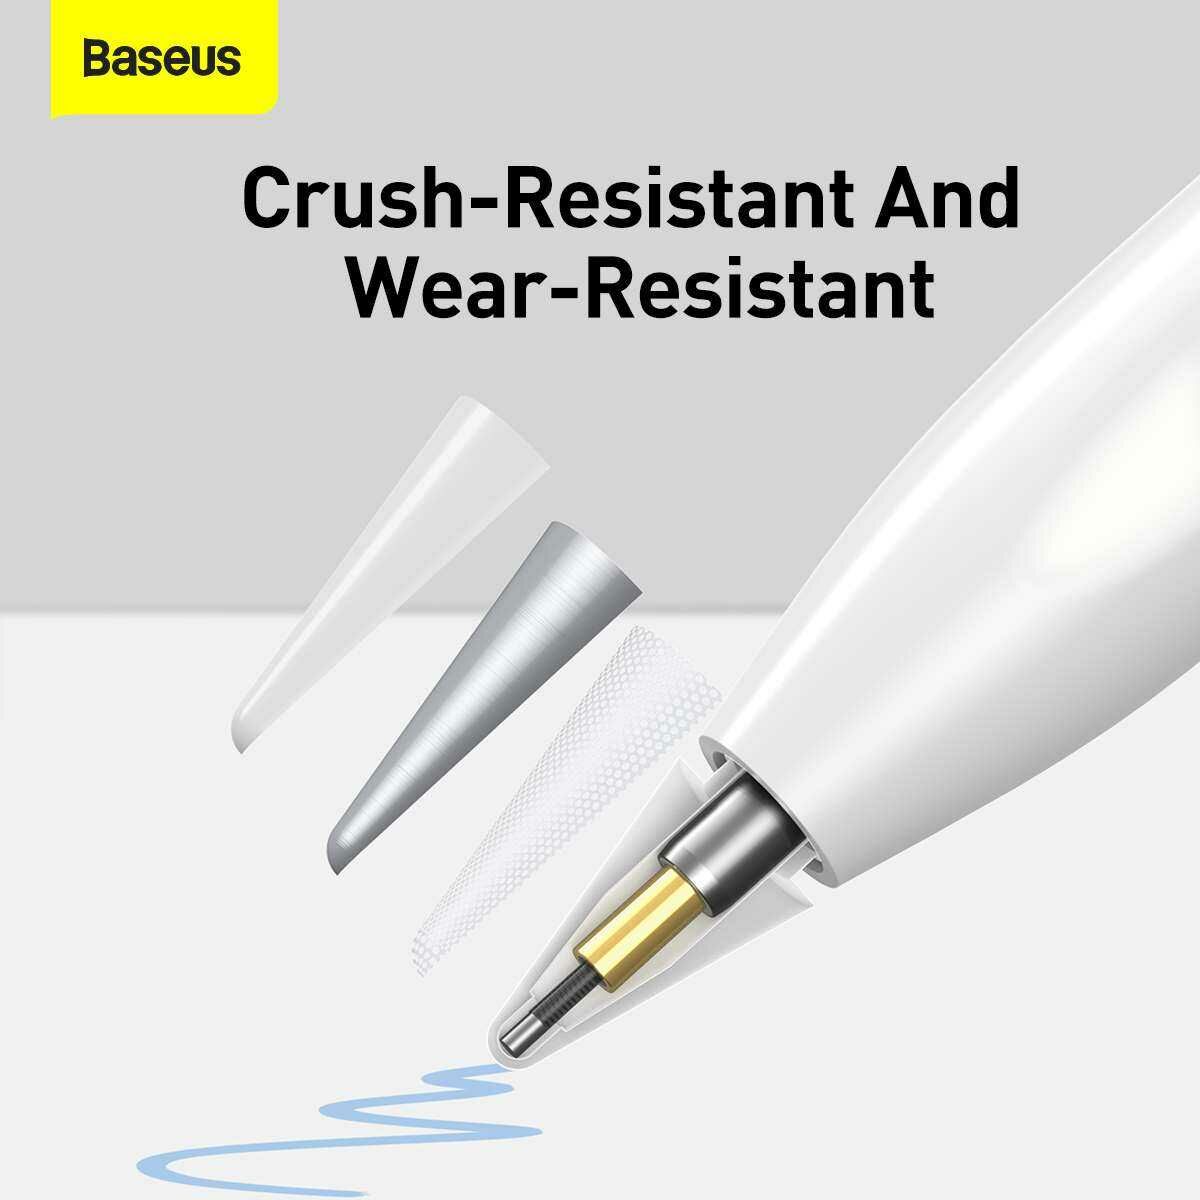 Baseus Tablet kiegészítő, Toll Smooth Writing Capacitive Stylus fejek (2db / doboz), fehér (SXBC010002)